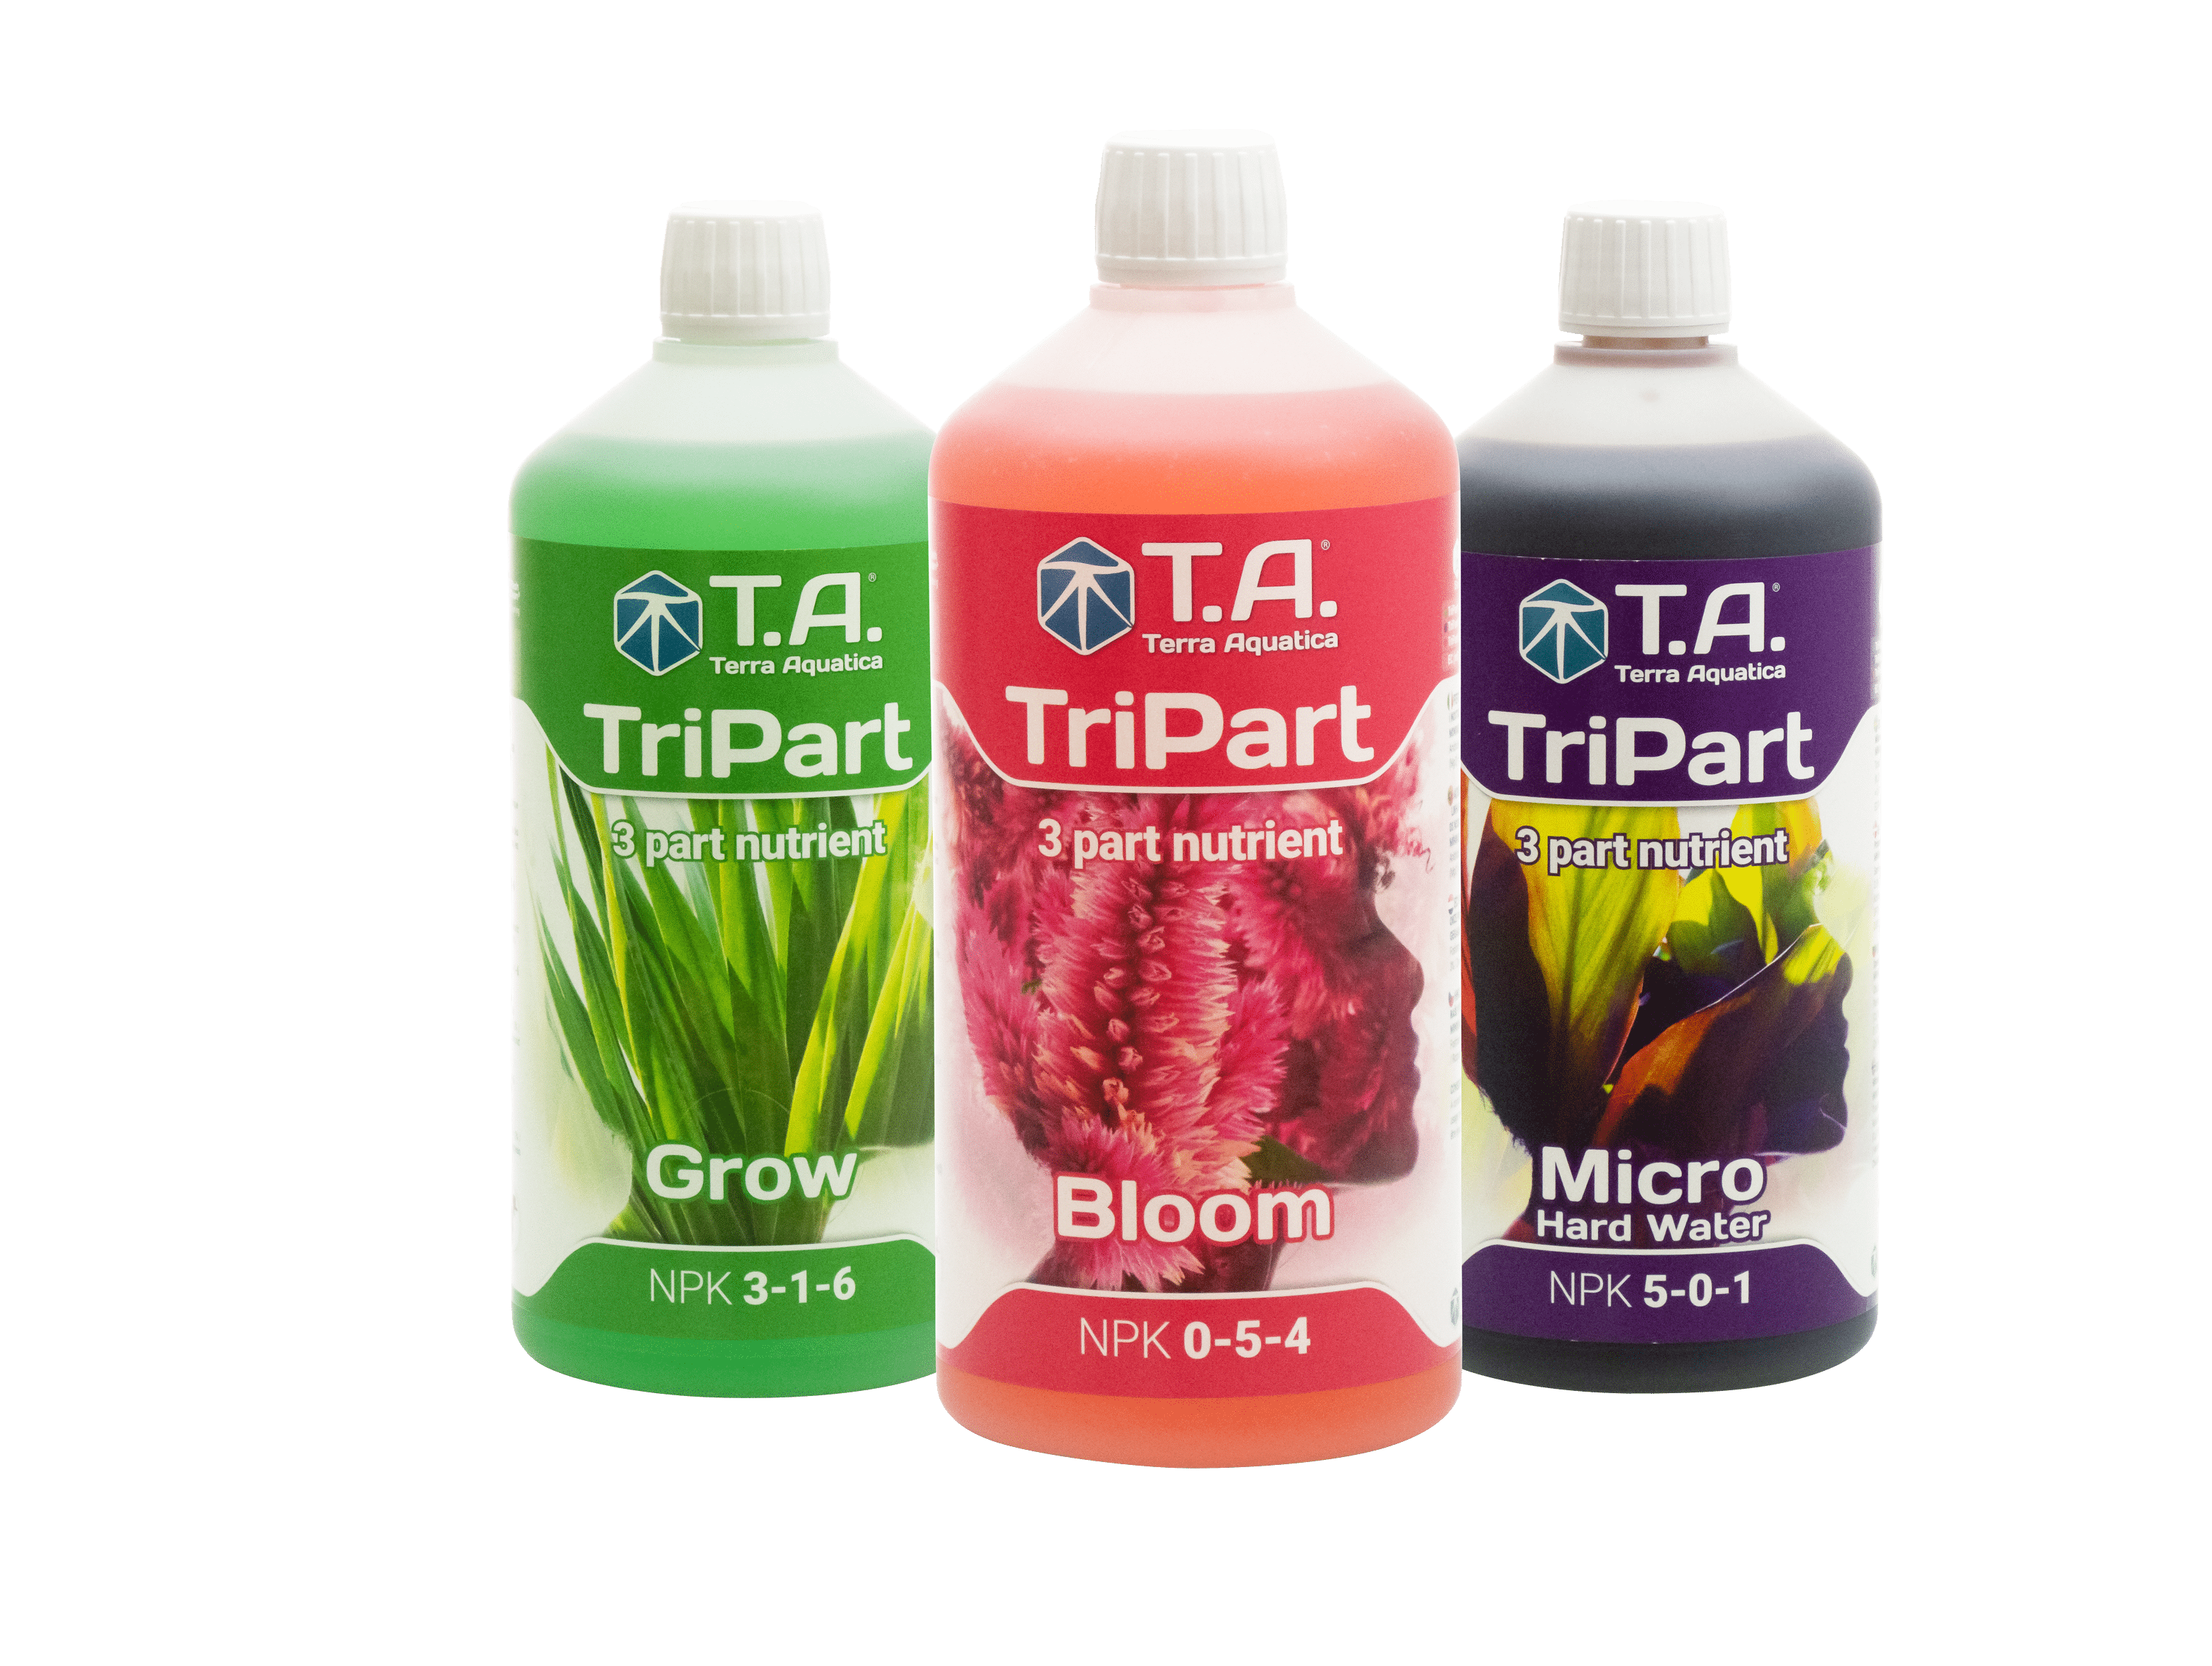 Nutrients Terra Aquatica TriPart Grow